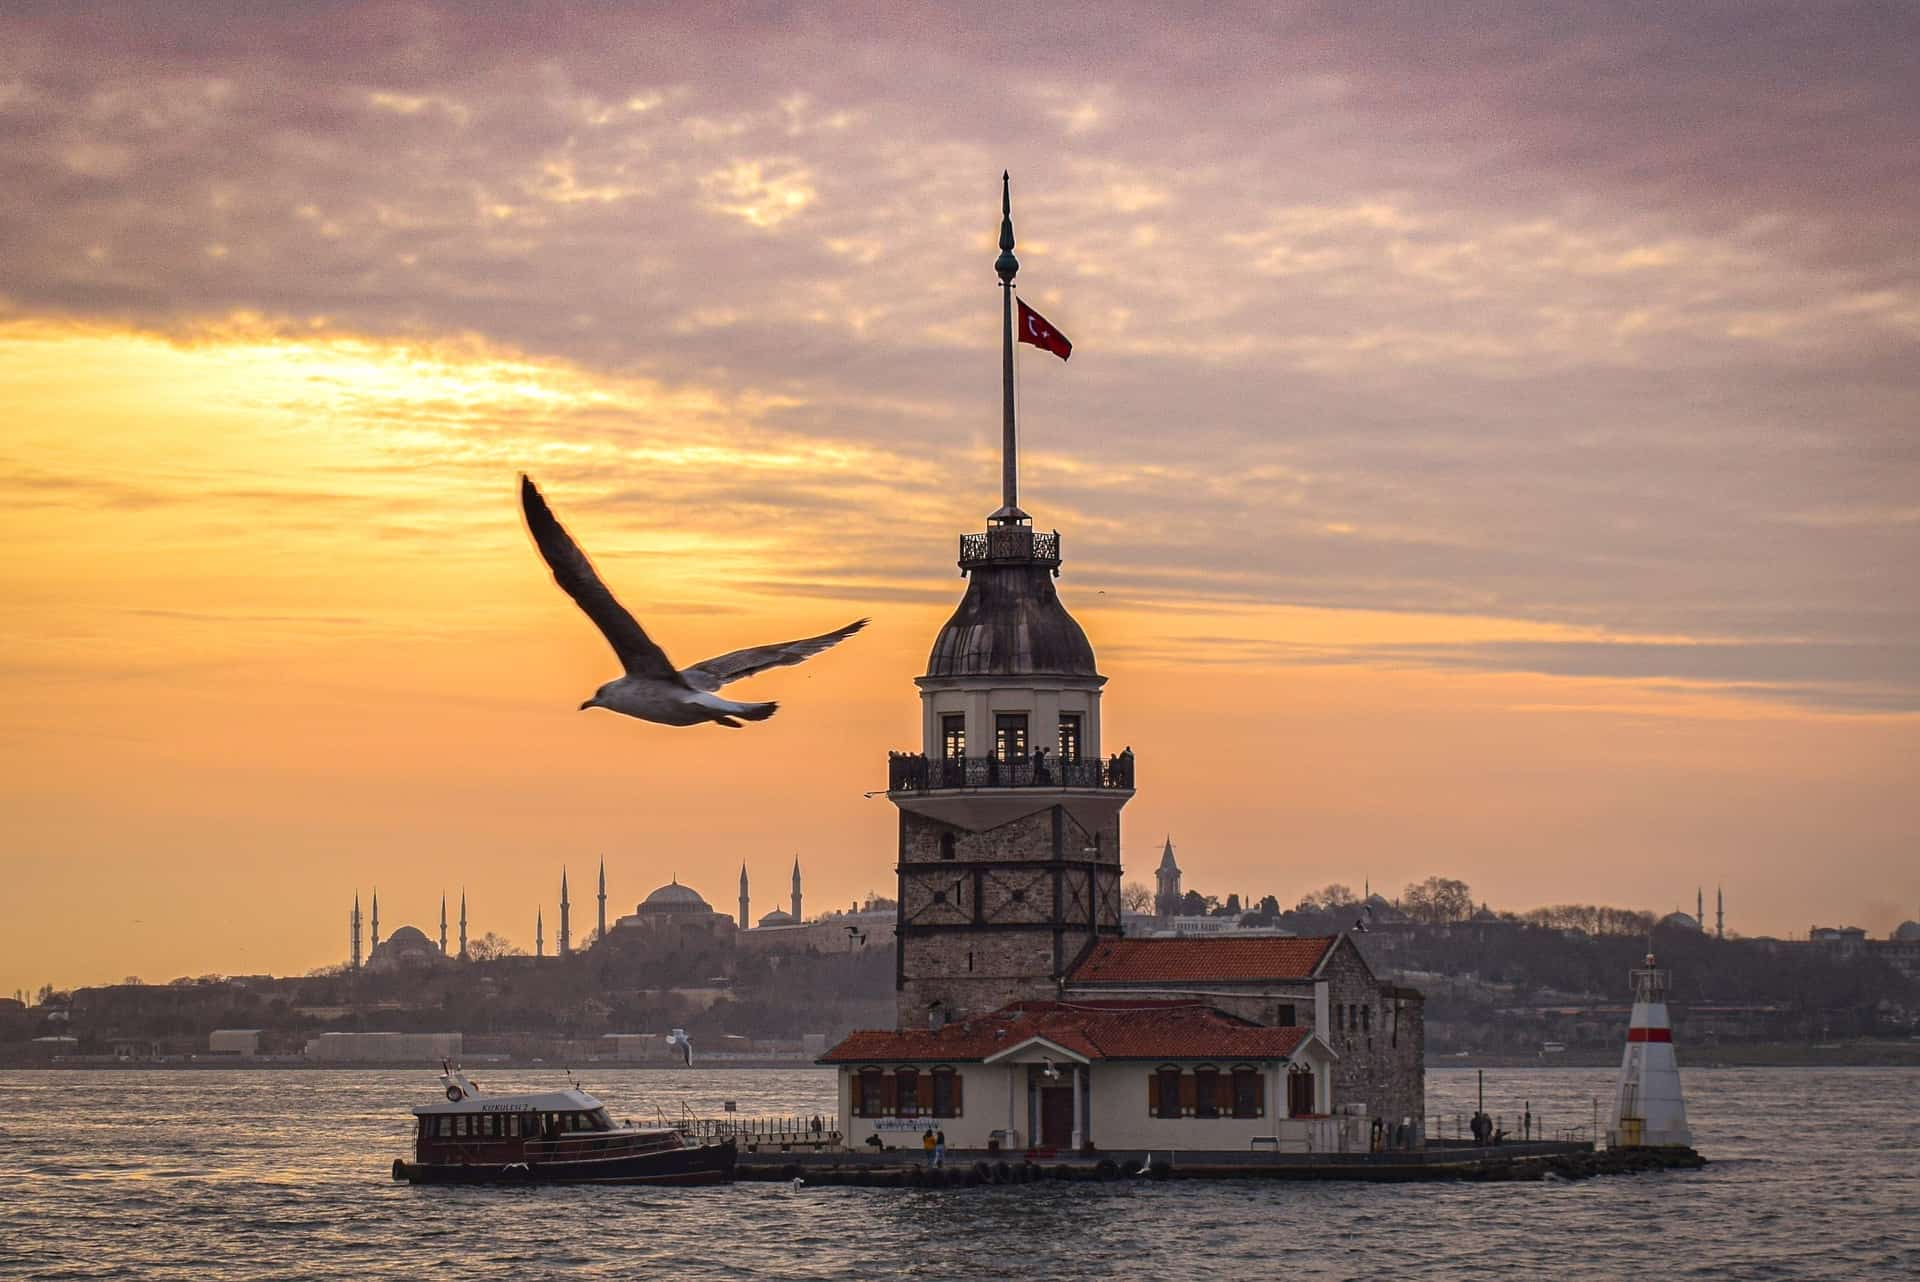 Vé máy bay đi Thổ Nhĩ Kỳ giá rẻ tốt nhất - Lịch bay 2022